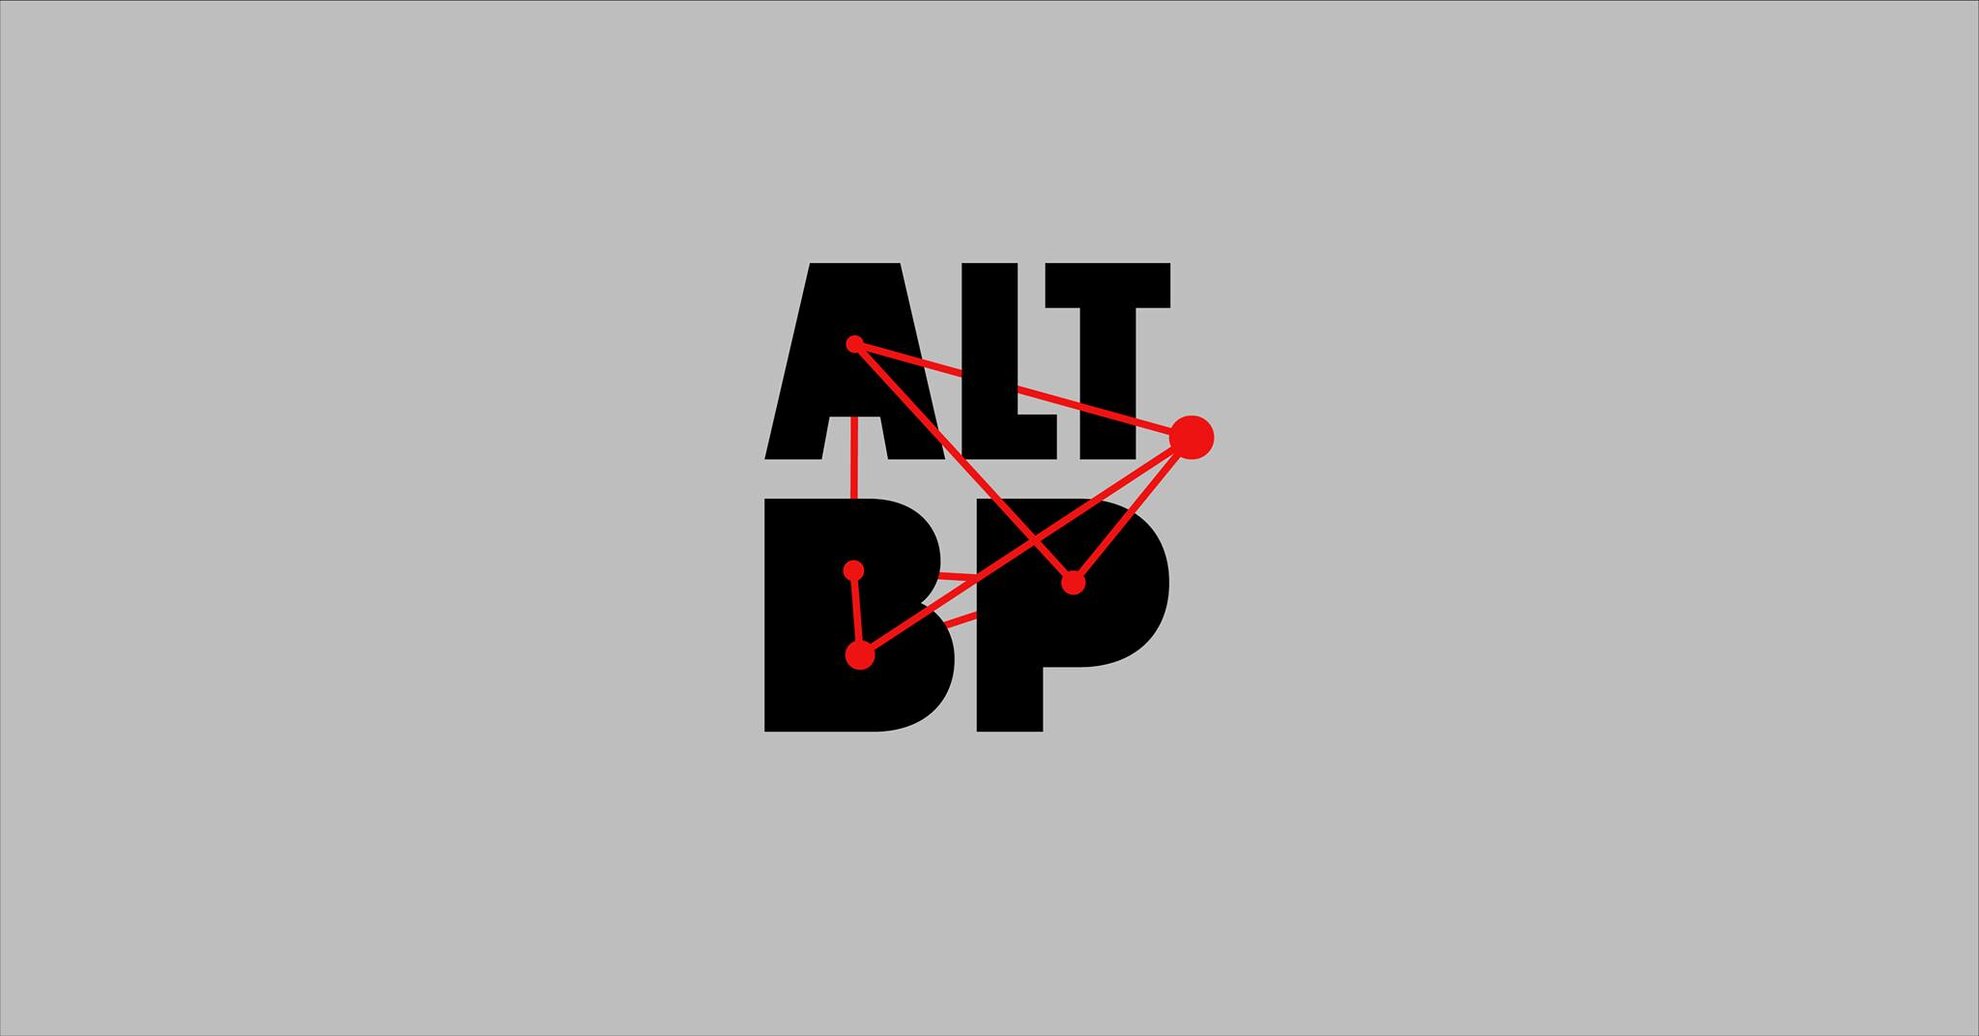 ALT.BP – Budapest alternatív kulturális feltérképezése